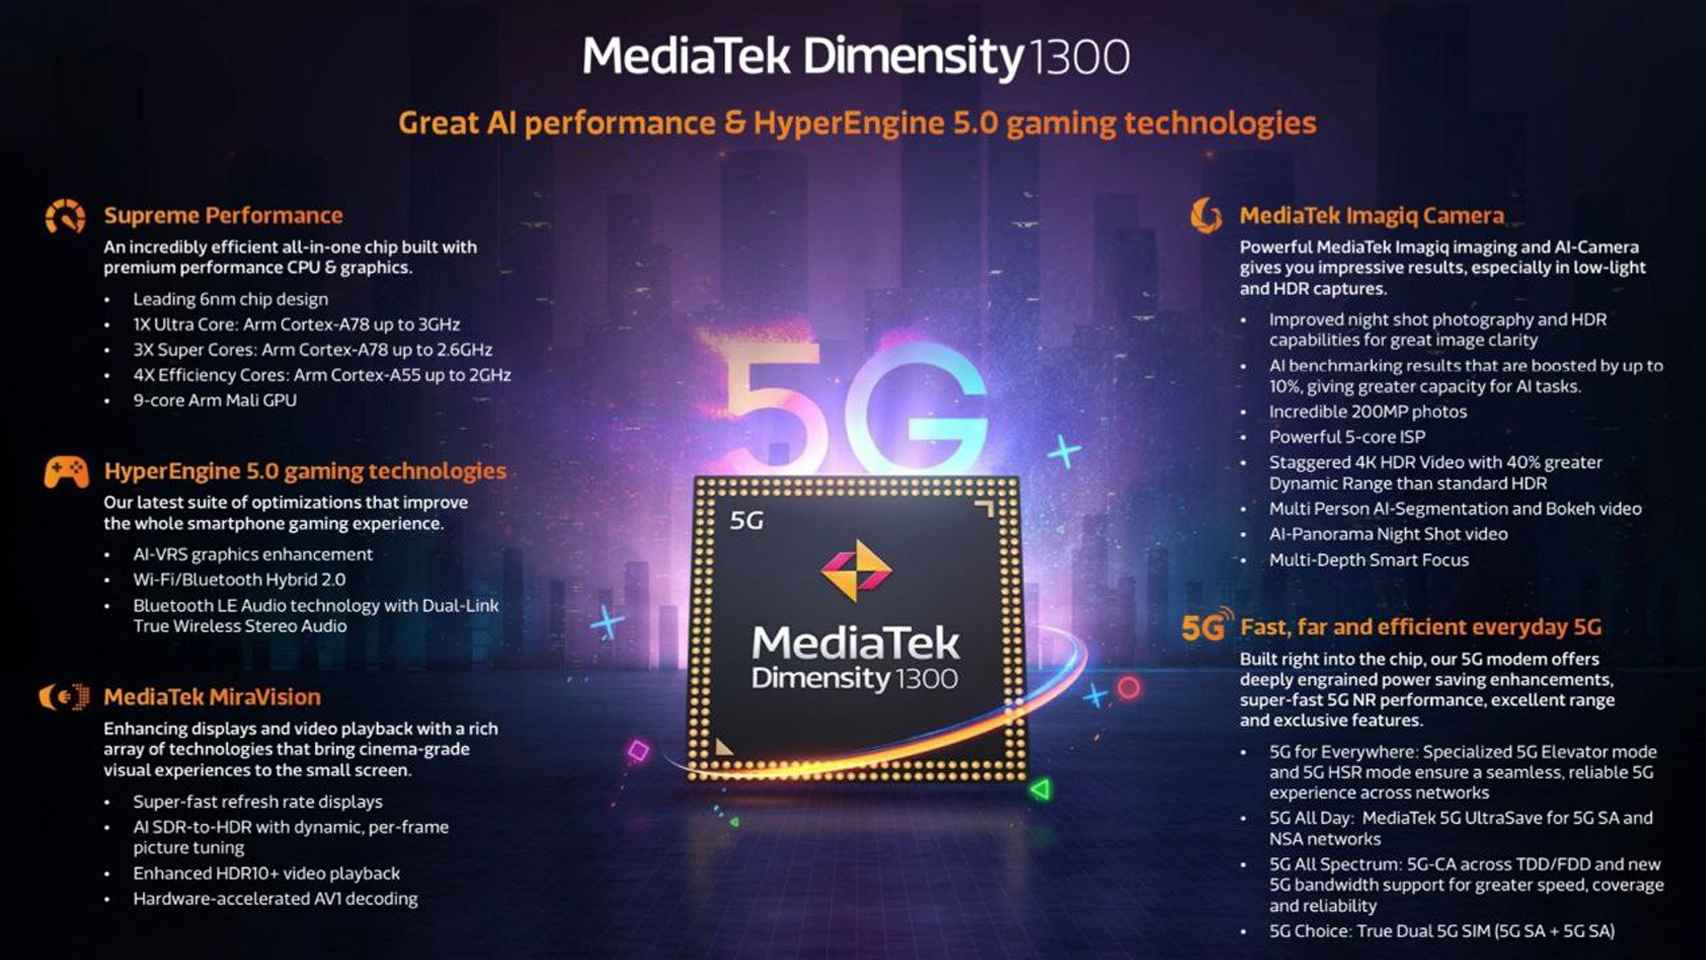 MediaTek DImensity 1300